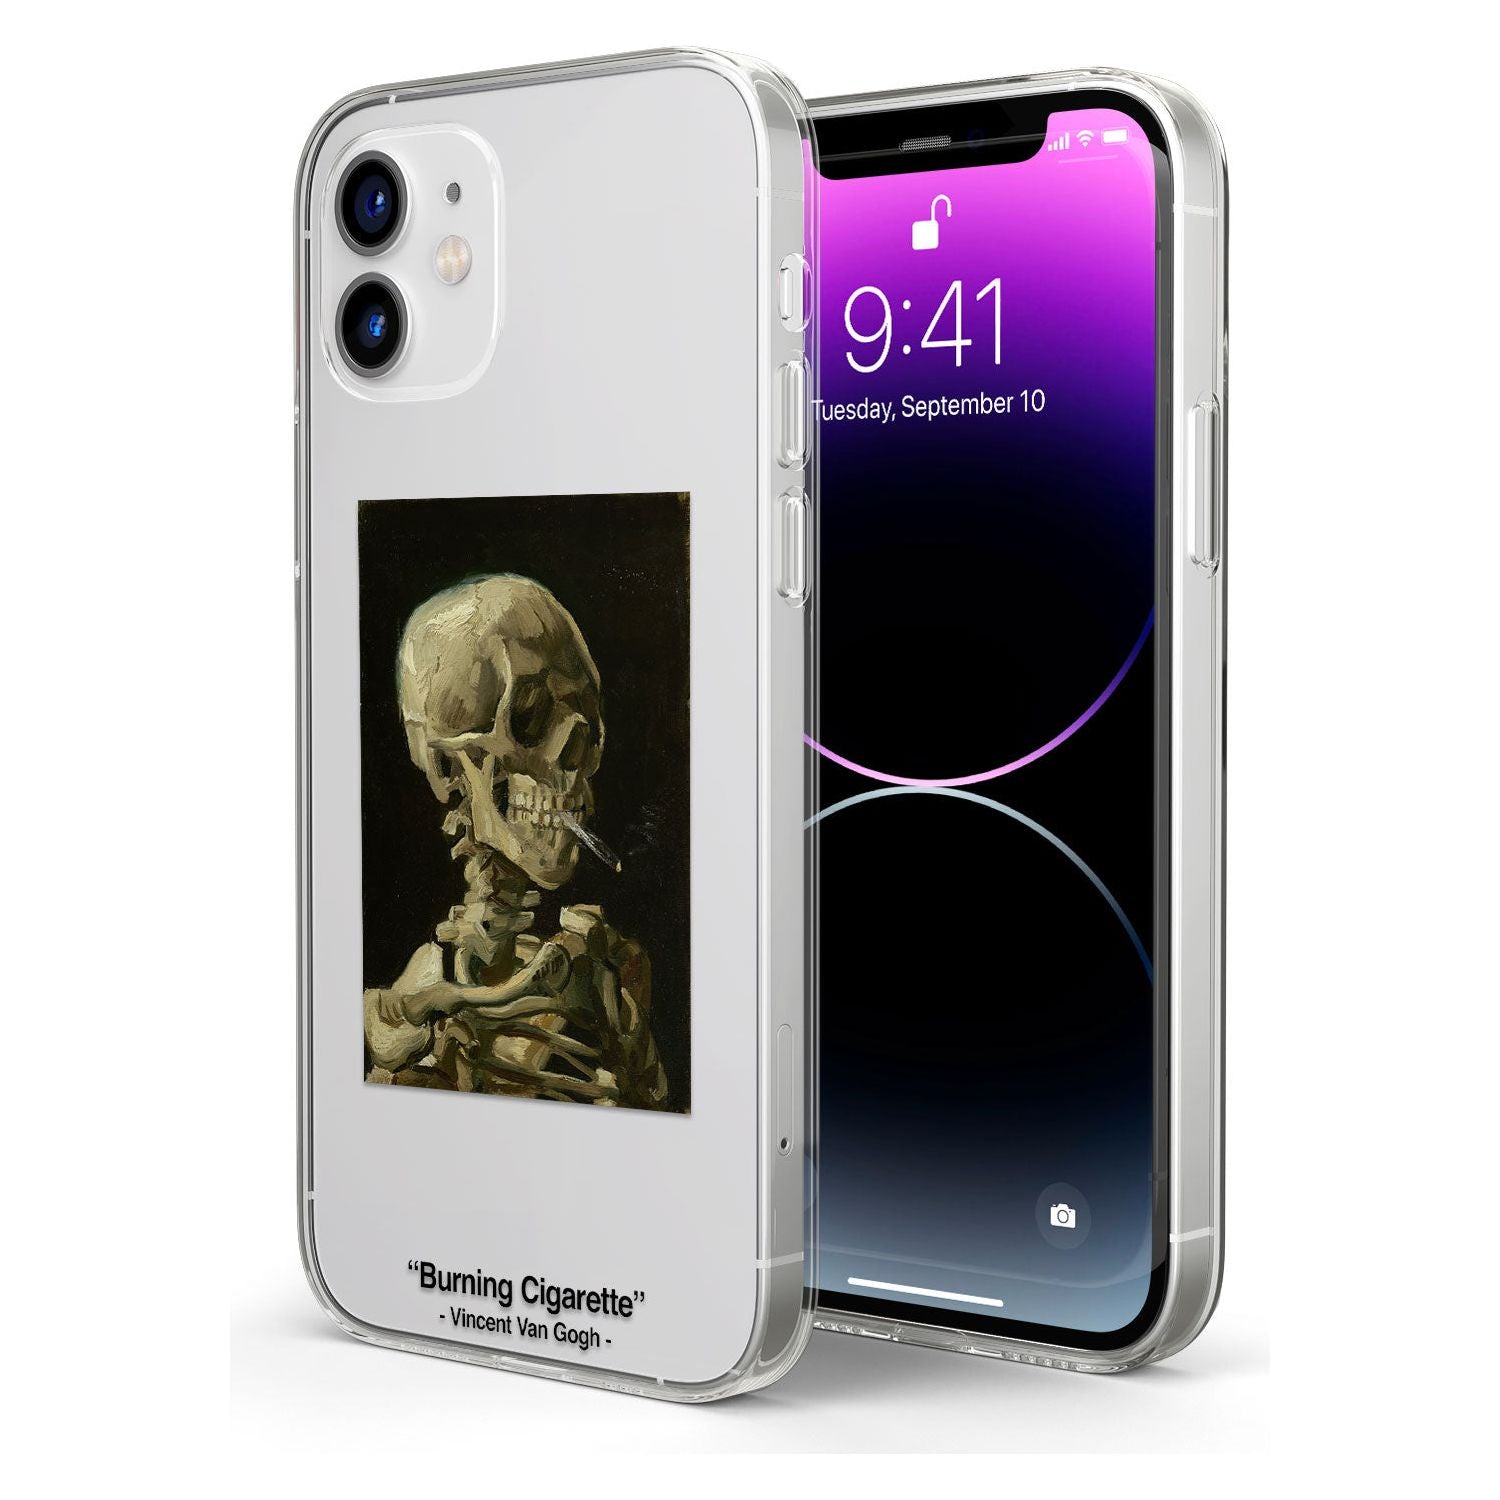 Birth of Venus Impact Phone Case for iPhone 11, iphone 12